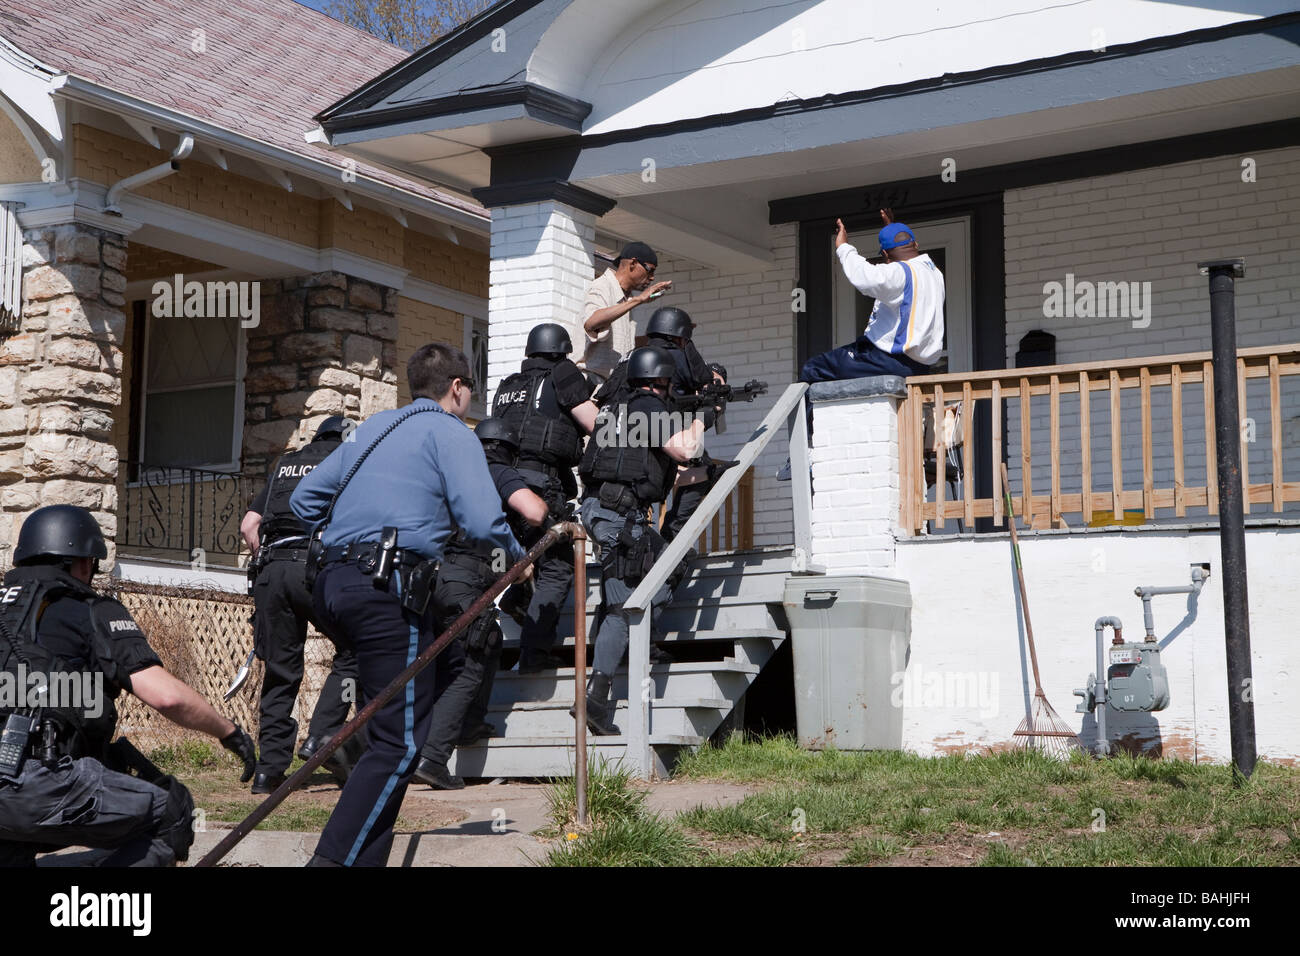 Polizei taktische Team einen hohes Risiko Droge-in Verbindung stehenden Durchsuchungsbefehl in Kansas City, Missouri Straße Drogen Einheit/TAC SWAT dienen. Stockfoto